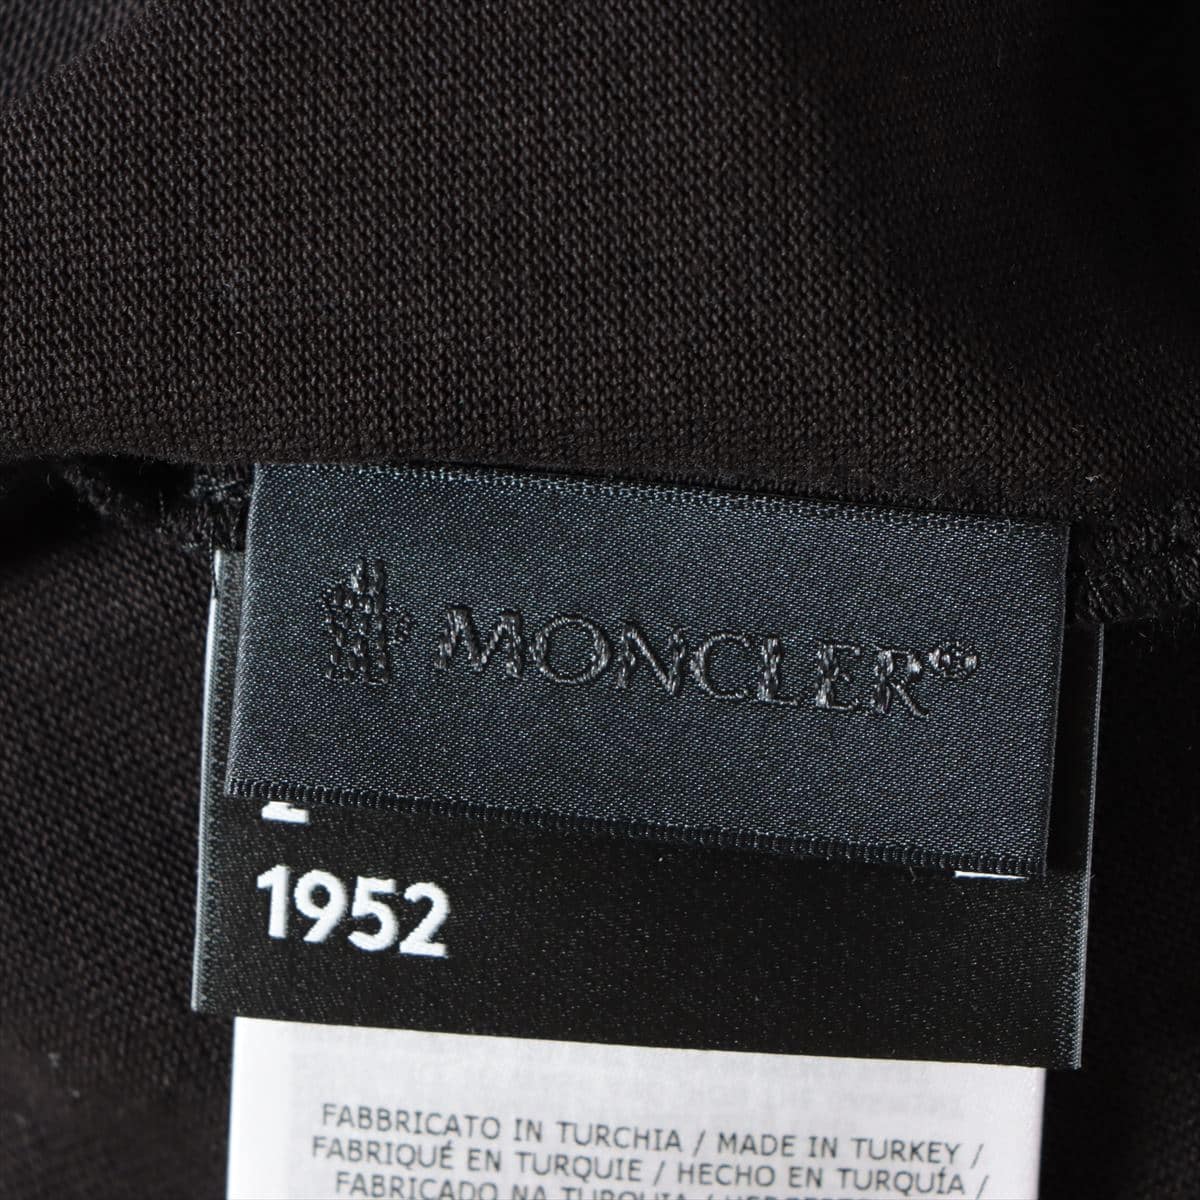 Moncler Genius 1952 MAGLIA 20 years Cotton Long T shirts M Men's Black